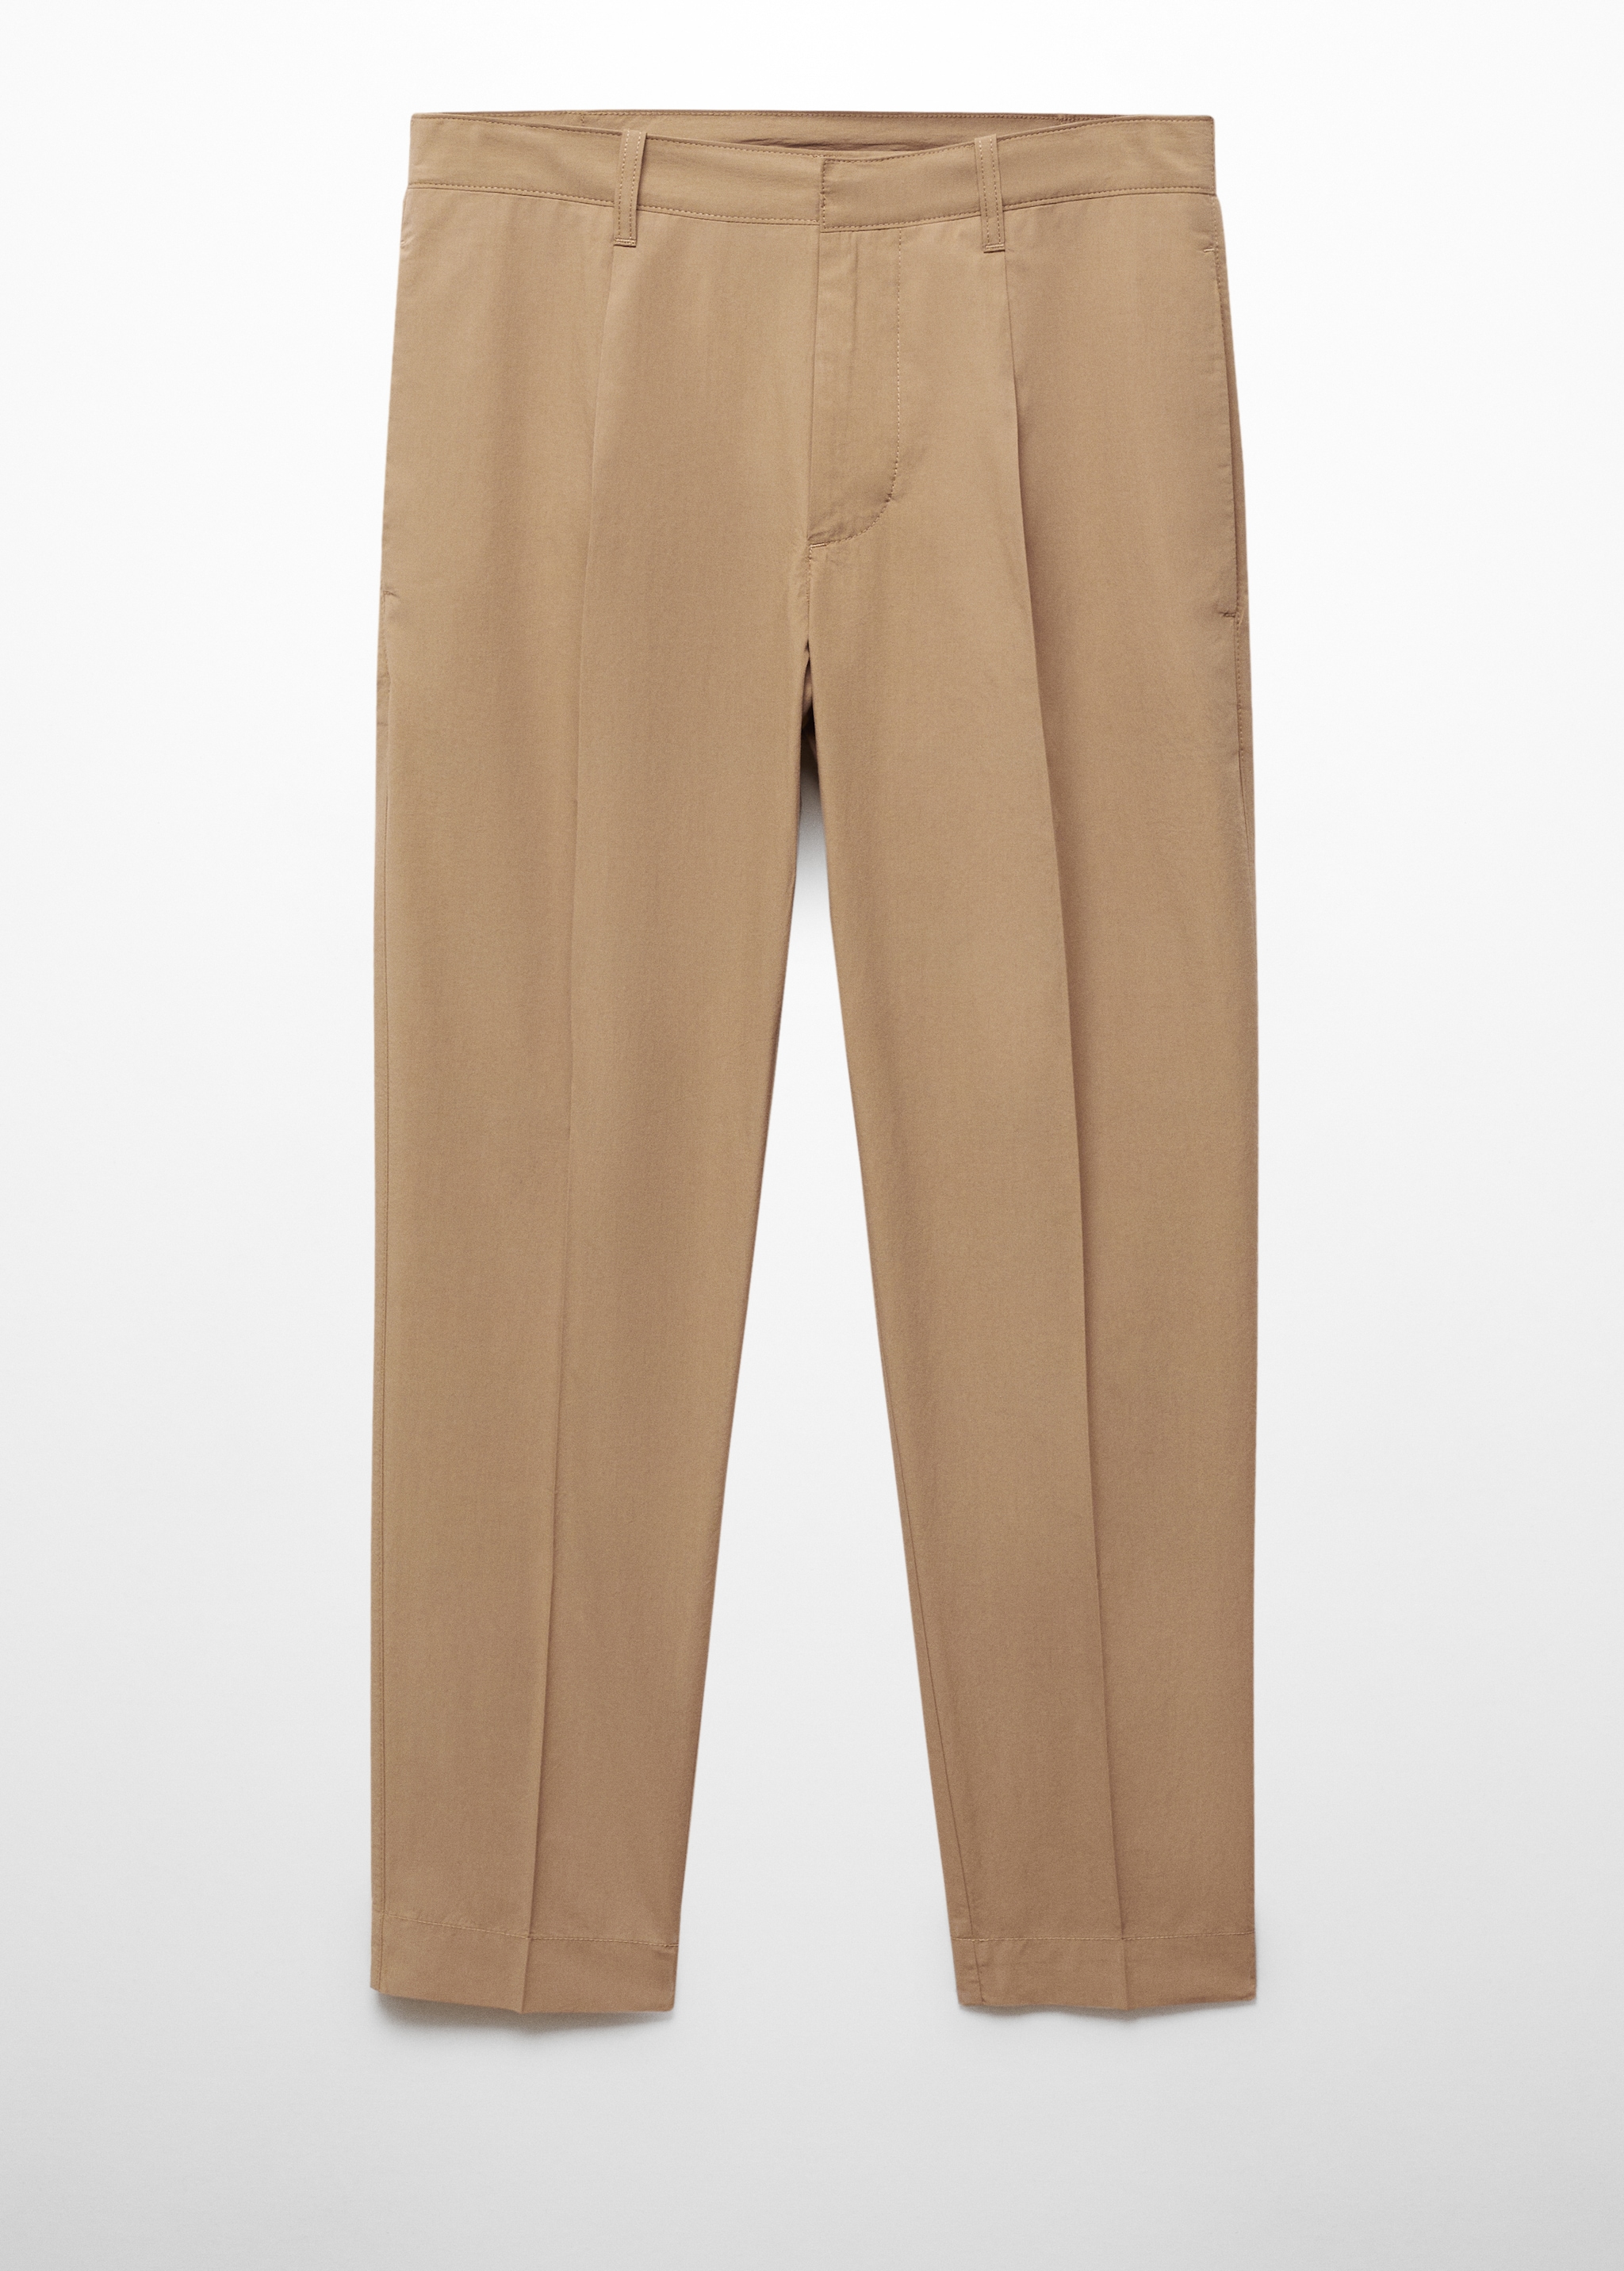 Pantaloni slim fit 100% bumbac - Articol fără model